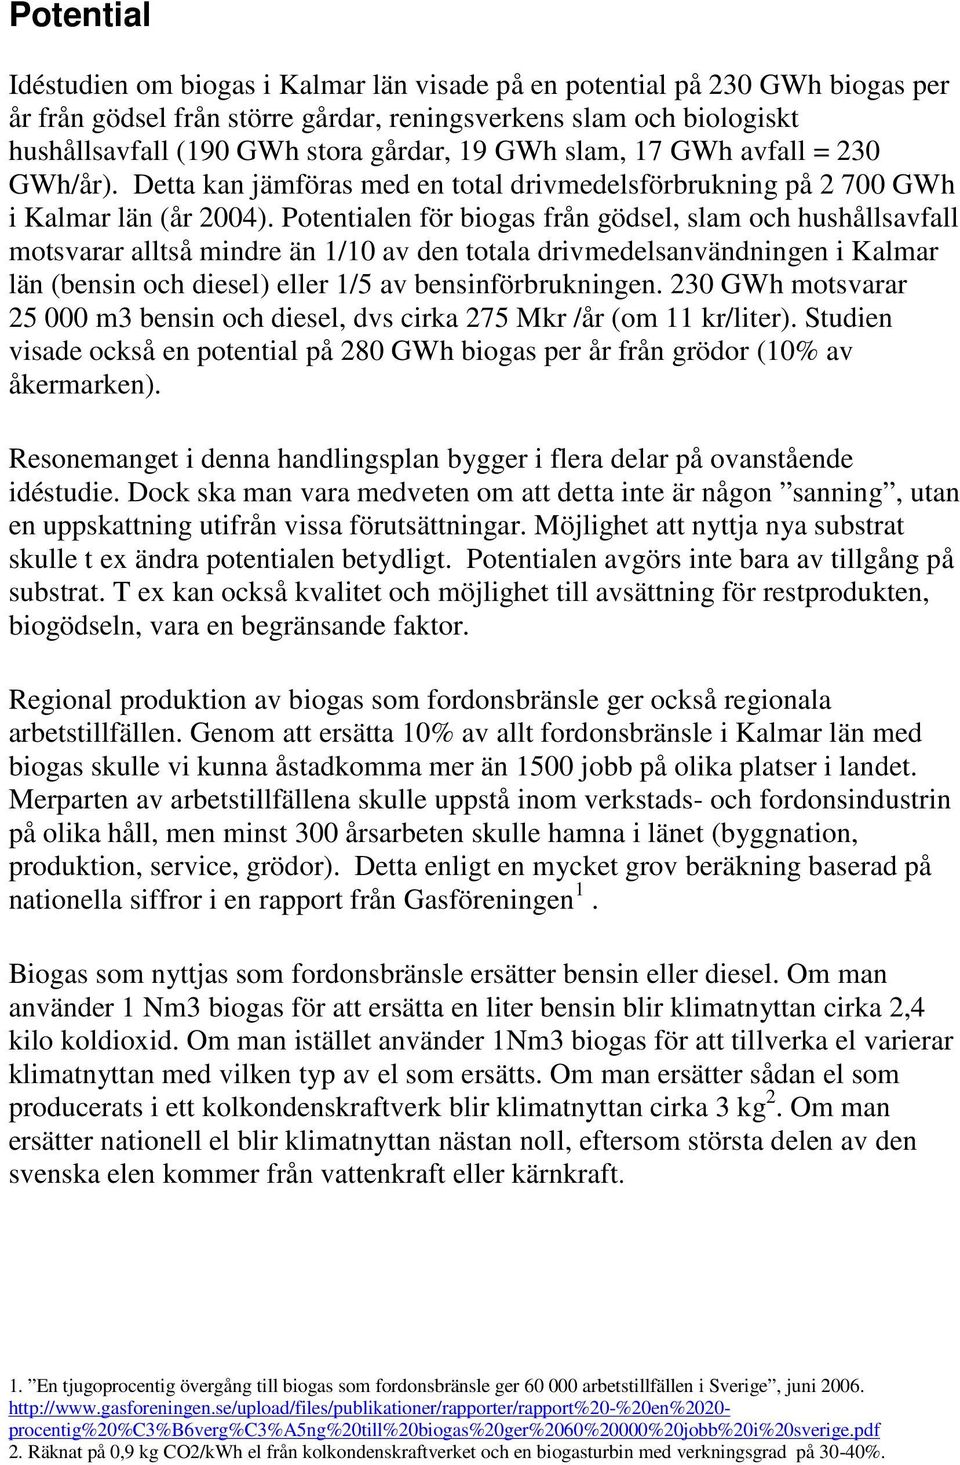 Potentialen för biogas från gödsel, slam och hushållsavfall motsvarar alltså mindre än 1/10 av den totala drivmedelsanvändningen i Kalmar län (bensin och diesel) eller 1/5 av bensinförbrukningen.